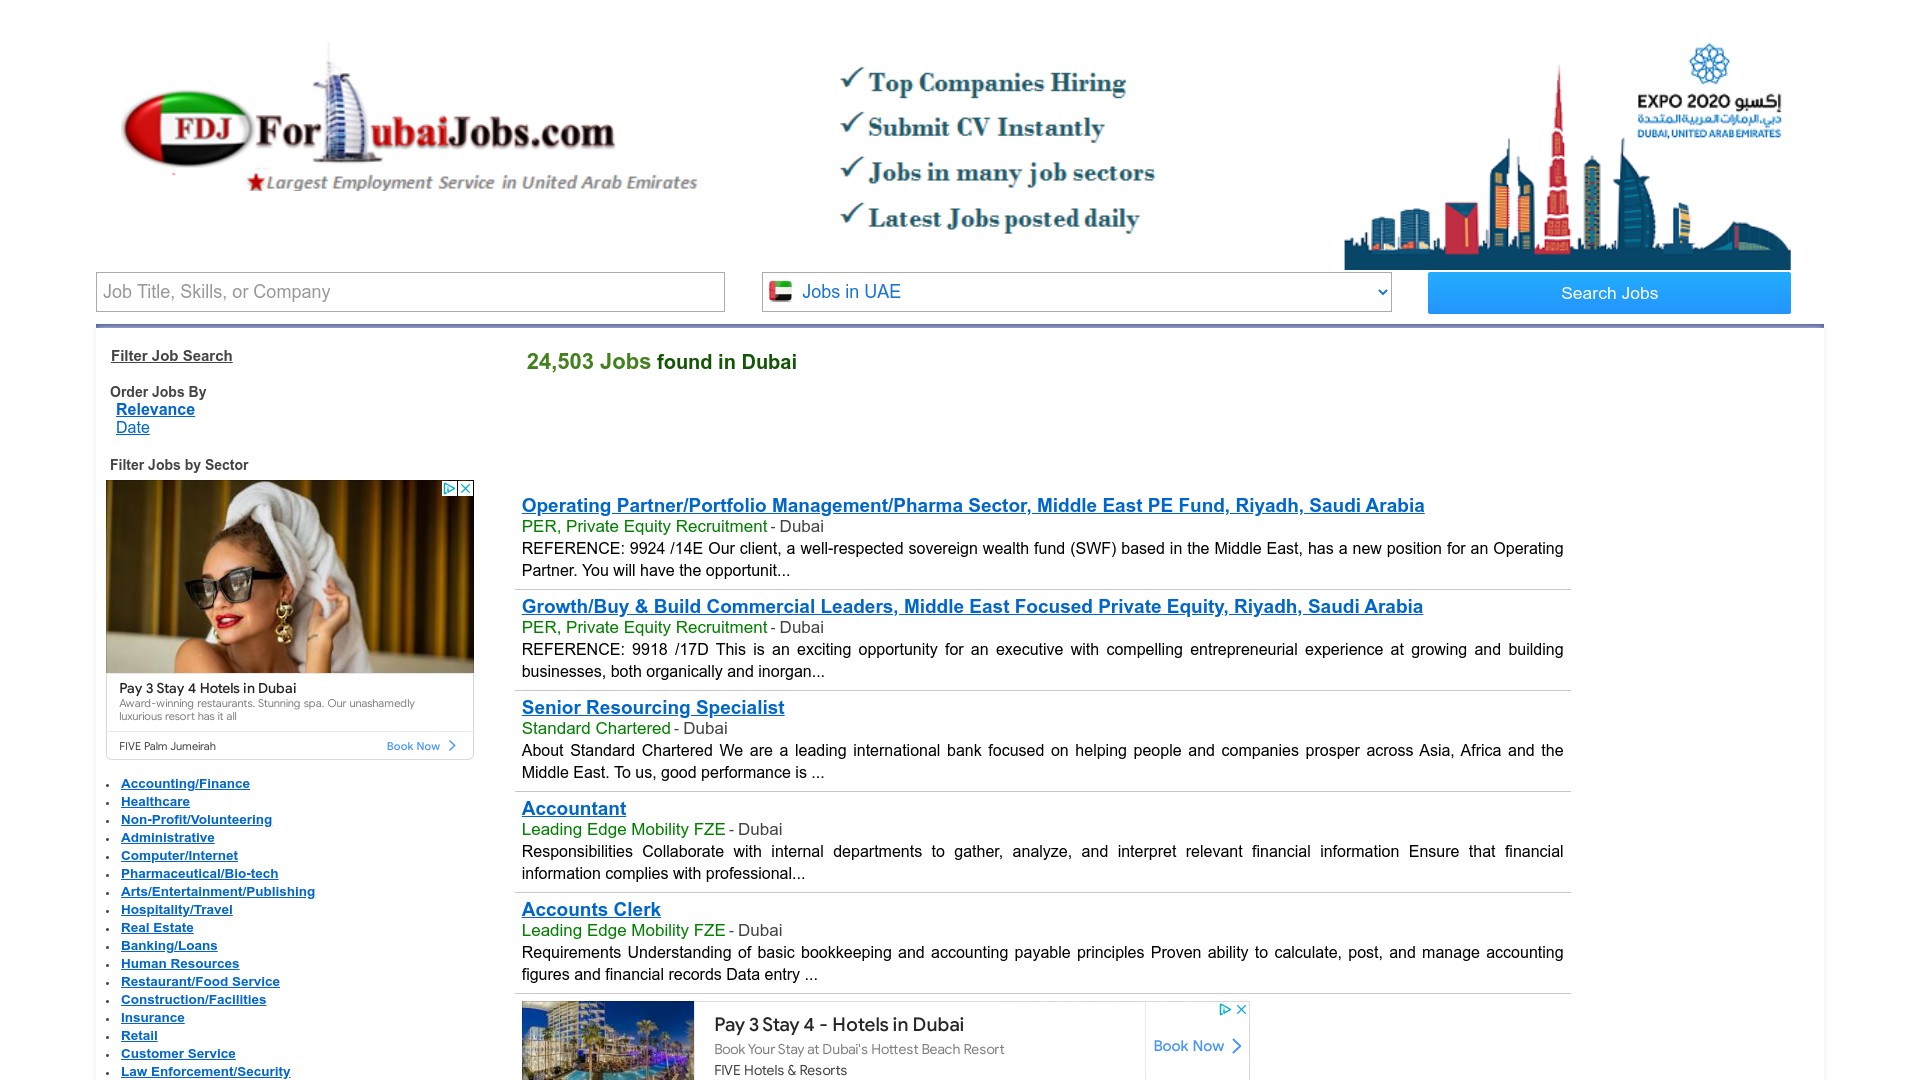 fordubaijobs.com Dubai Jobs Employment Service Review